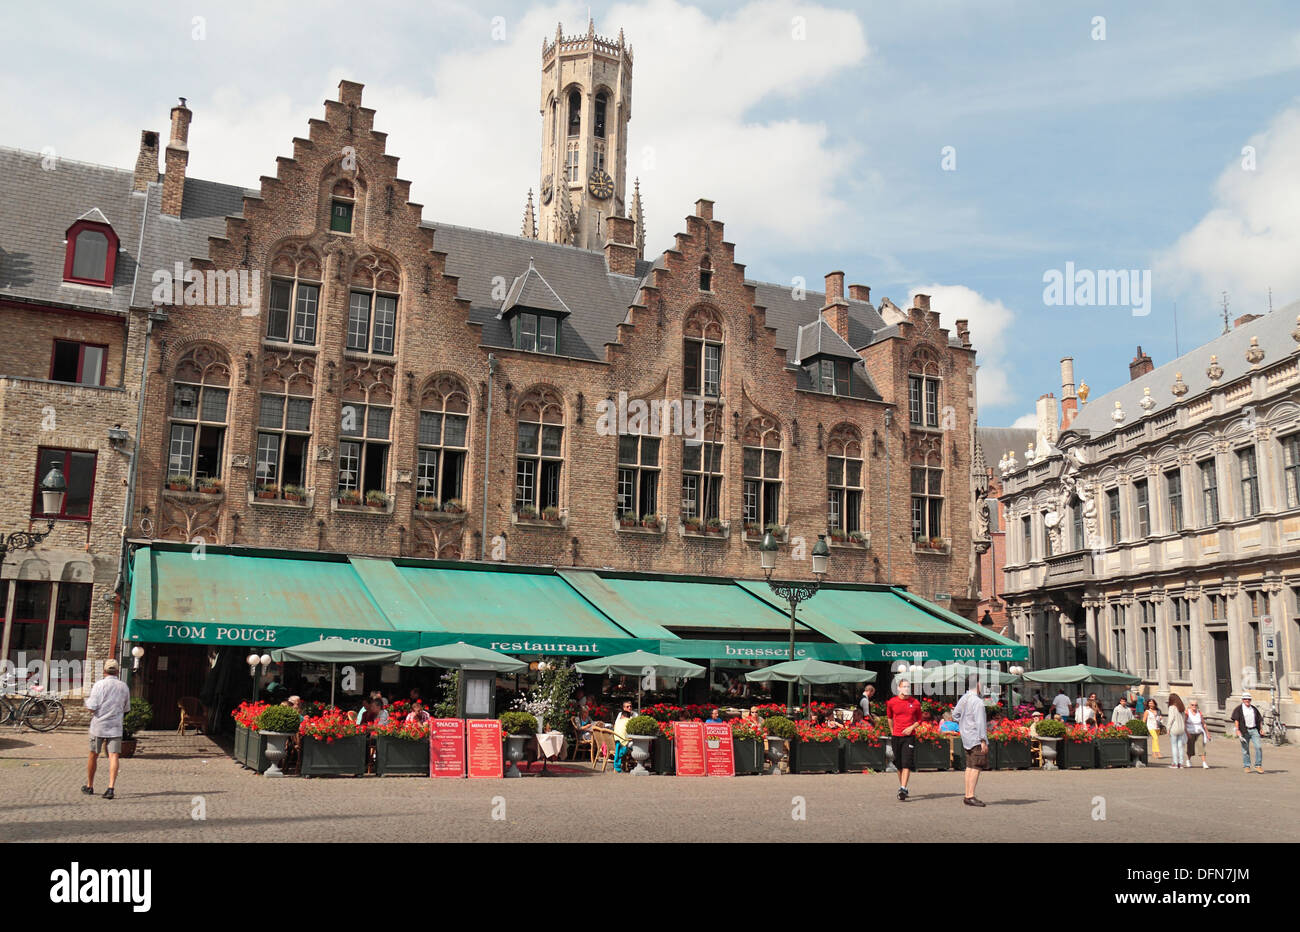 Il Tom Pouce ristorante e sale da tè nel centro storico di Bruges (Brugge), Fiandre Occidentali, Belgio. Foto Stock